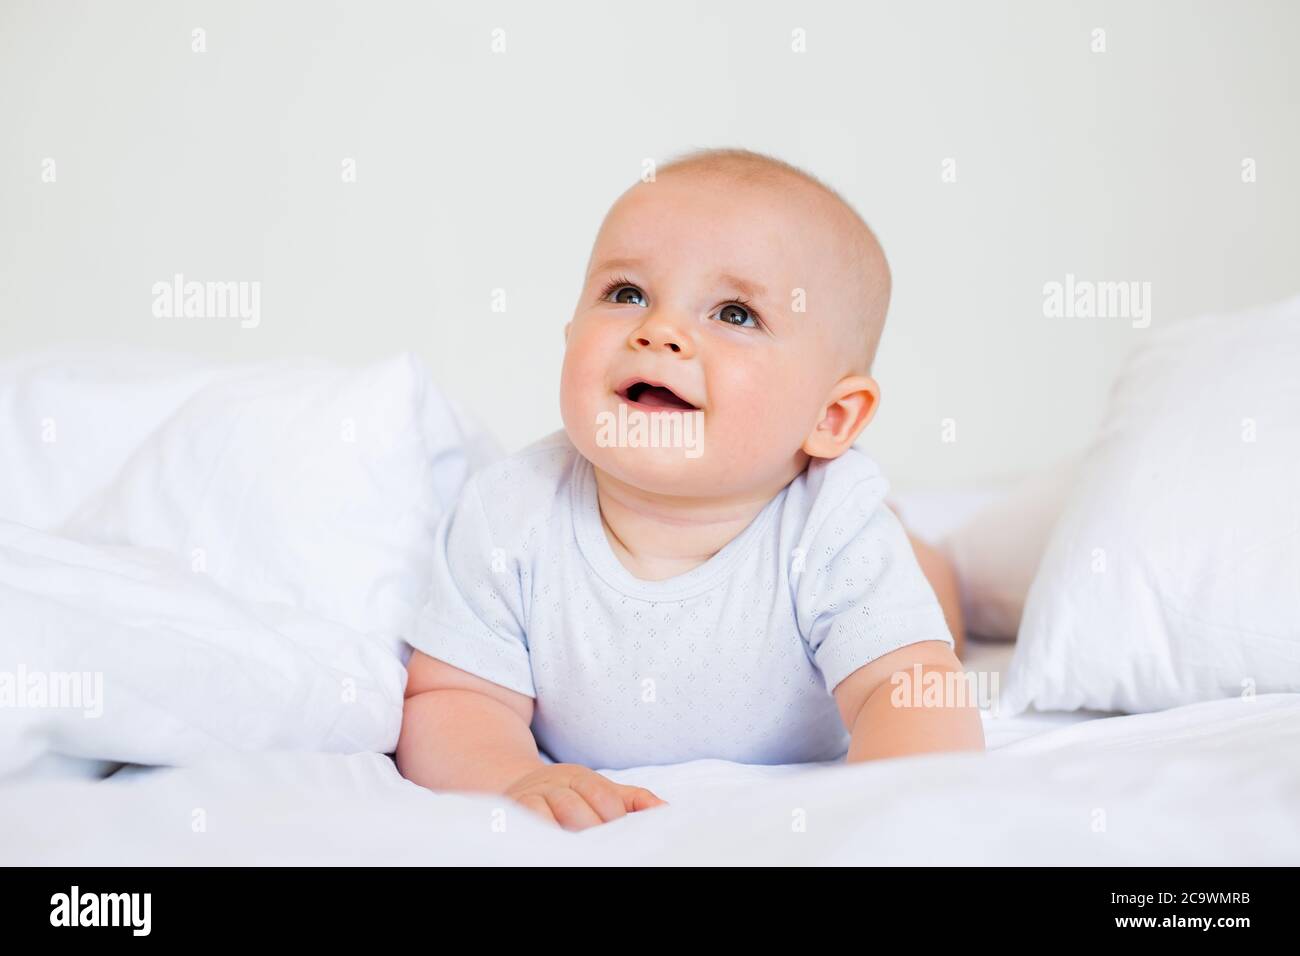 Carino bambino ragazzo sorridente si trova nel letto della casa. Biancheria da letto per i bambini Foto Stock